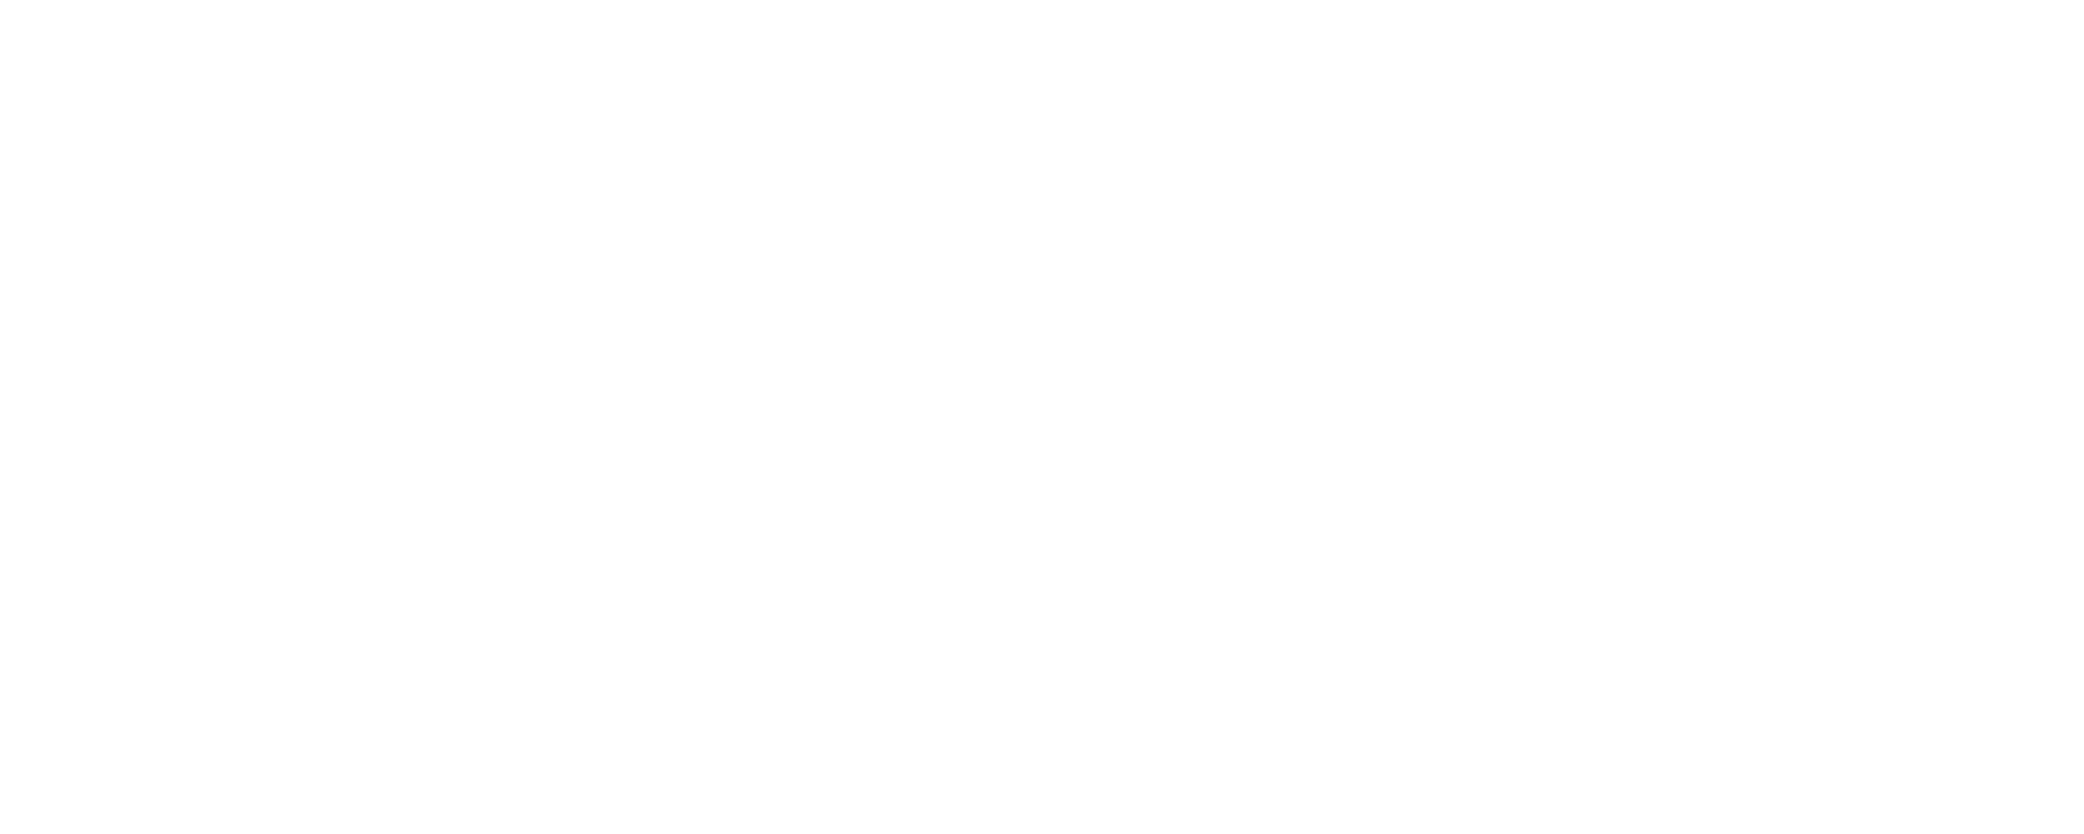 Chemours White 3 logo